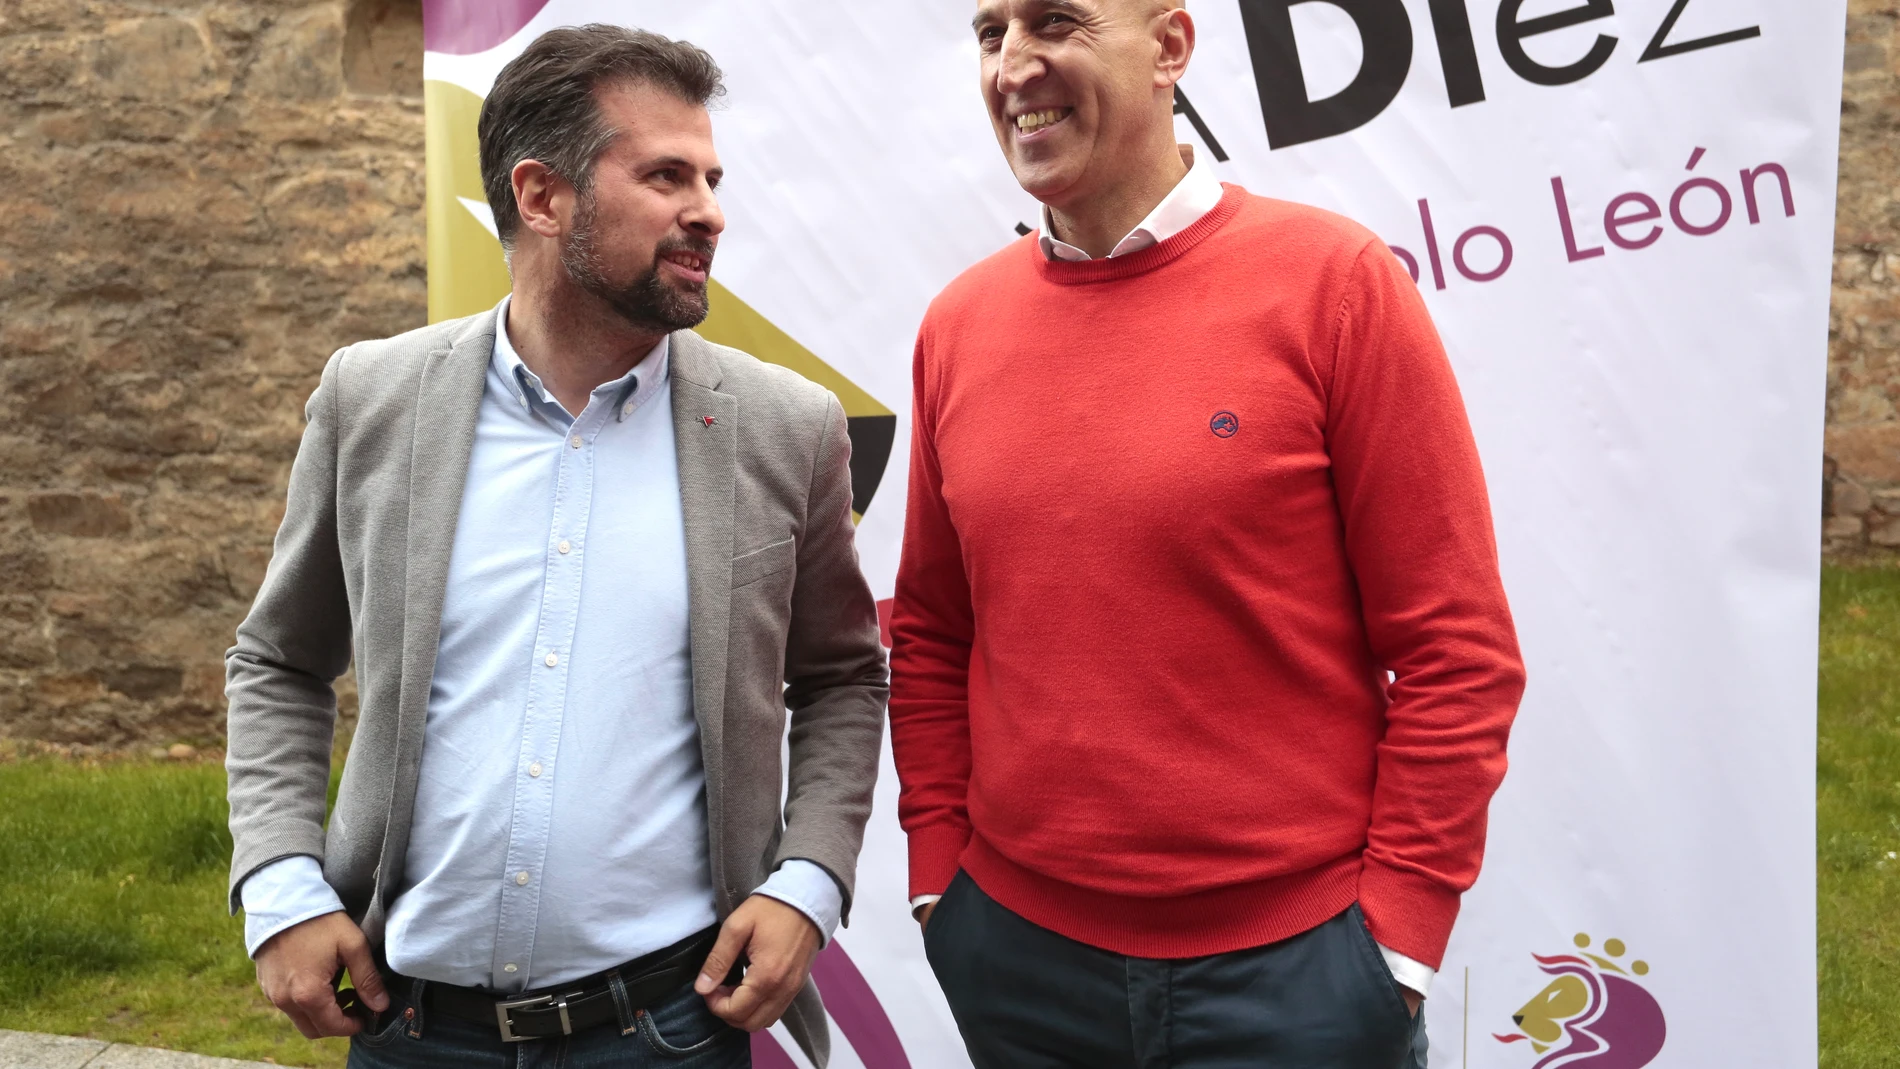 Tudanca en el cierre de campaña en León con José Antonio Diez